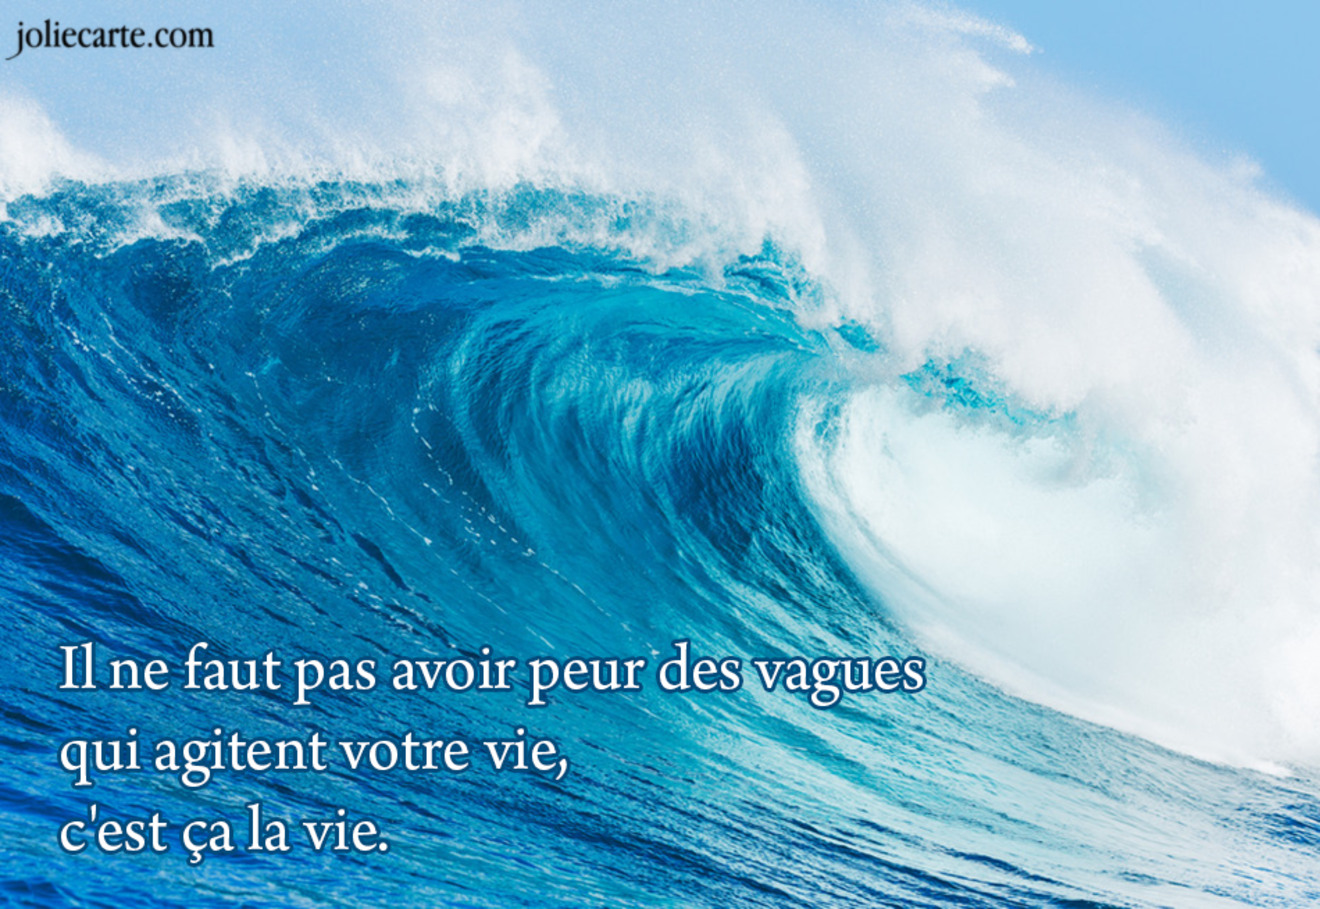 Il ne faut pas avoir peur des vagues qui agitent votre vie, c'est ça la vie.